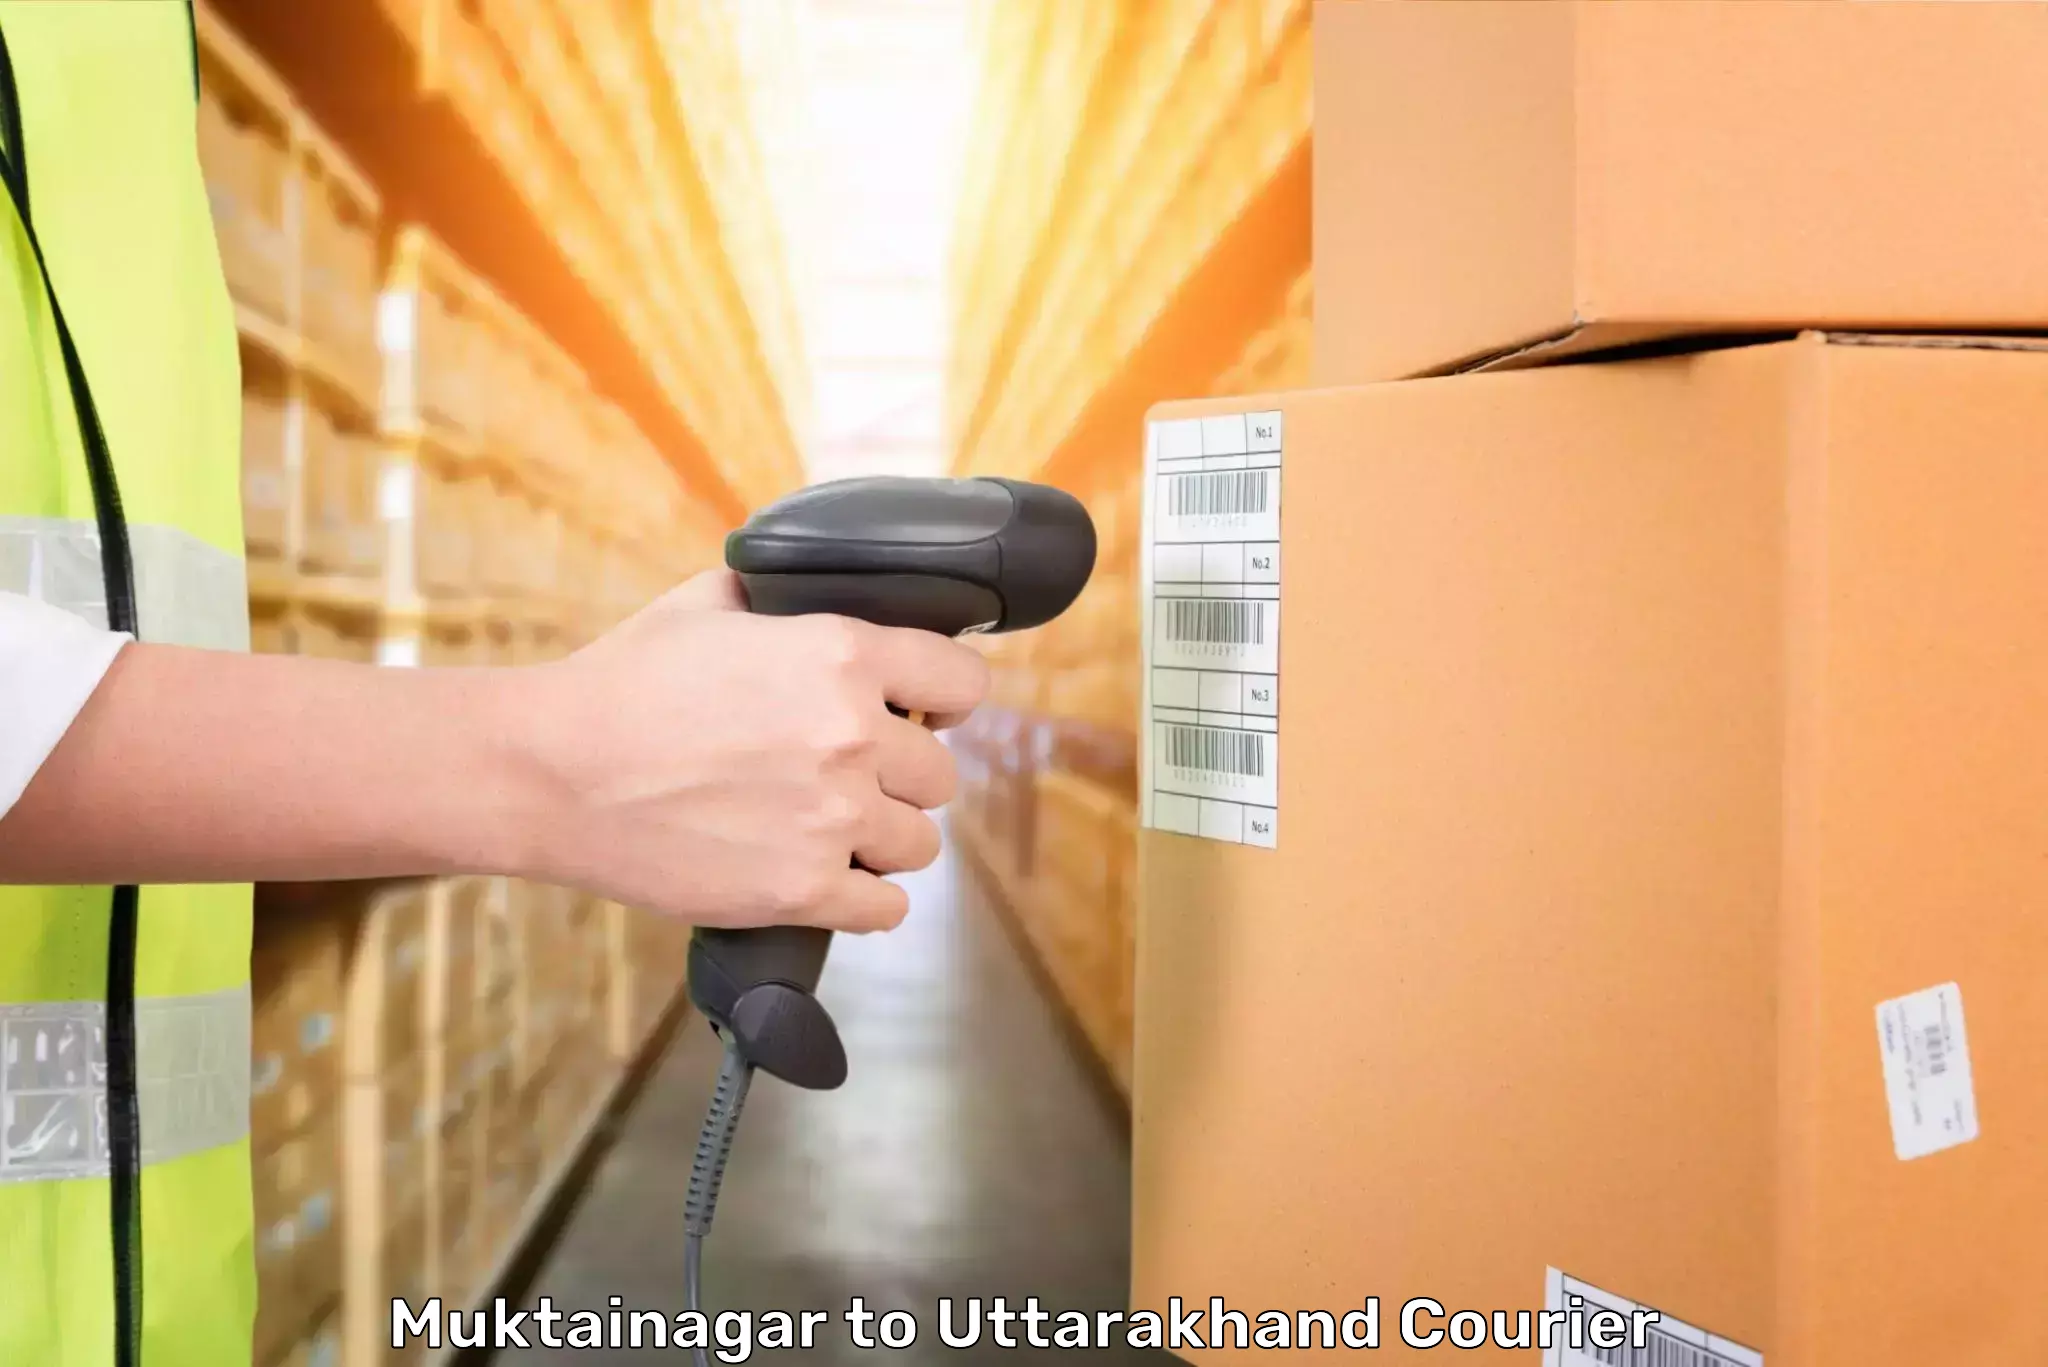 Luggage transfer service Muktainagar to Tehri Garhwal